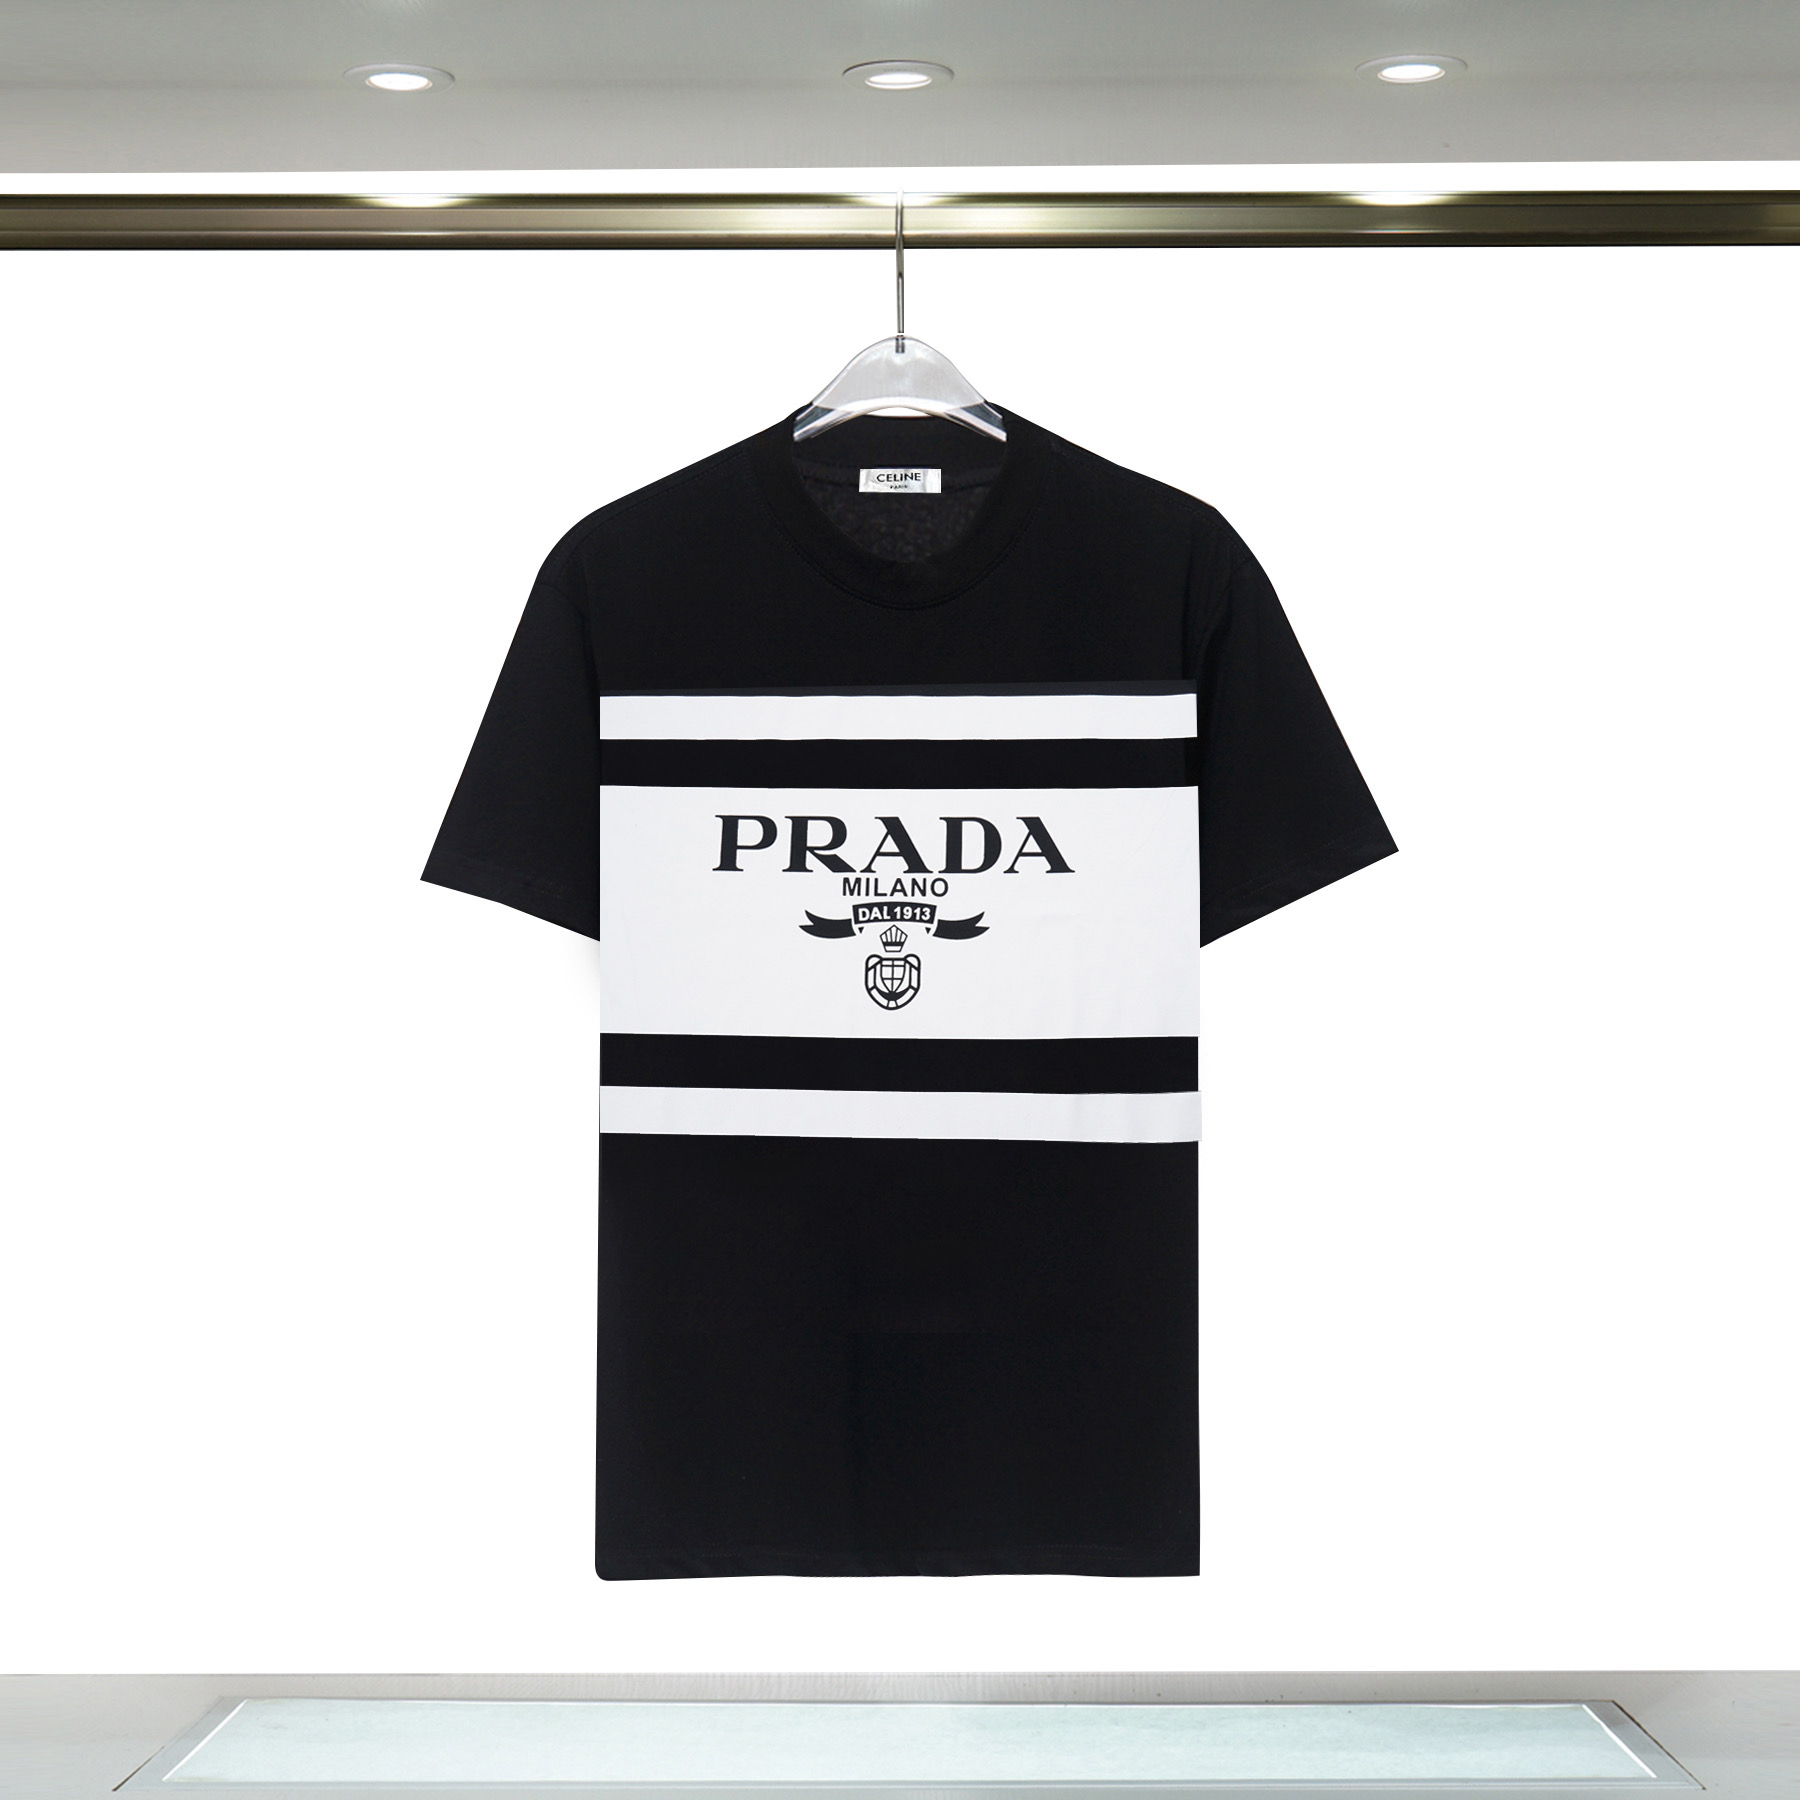 Prada Short Sleeve T Shirts Unisex # 265593, cheap Prada T-shirts Short Sleeved Prada, only $27!